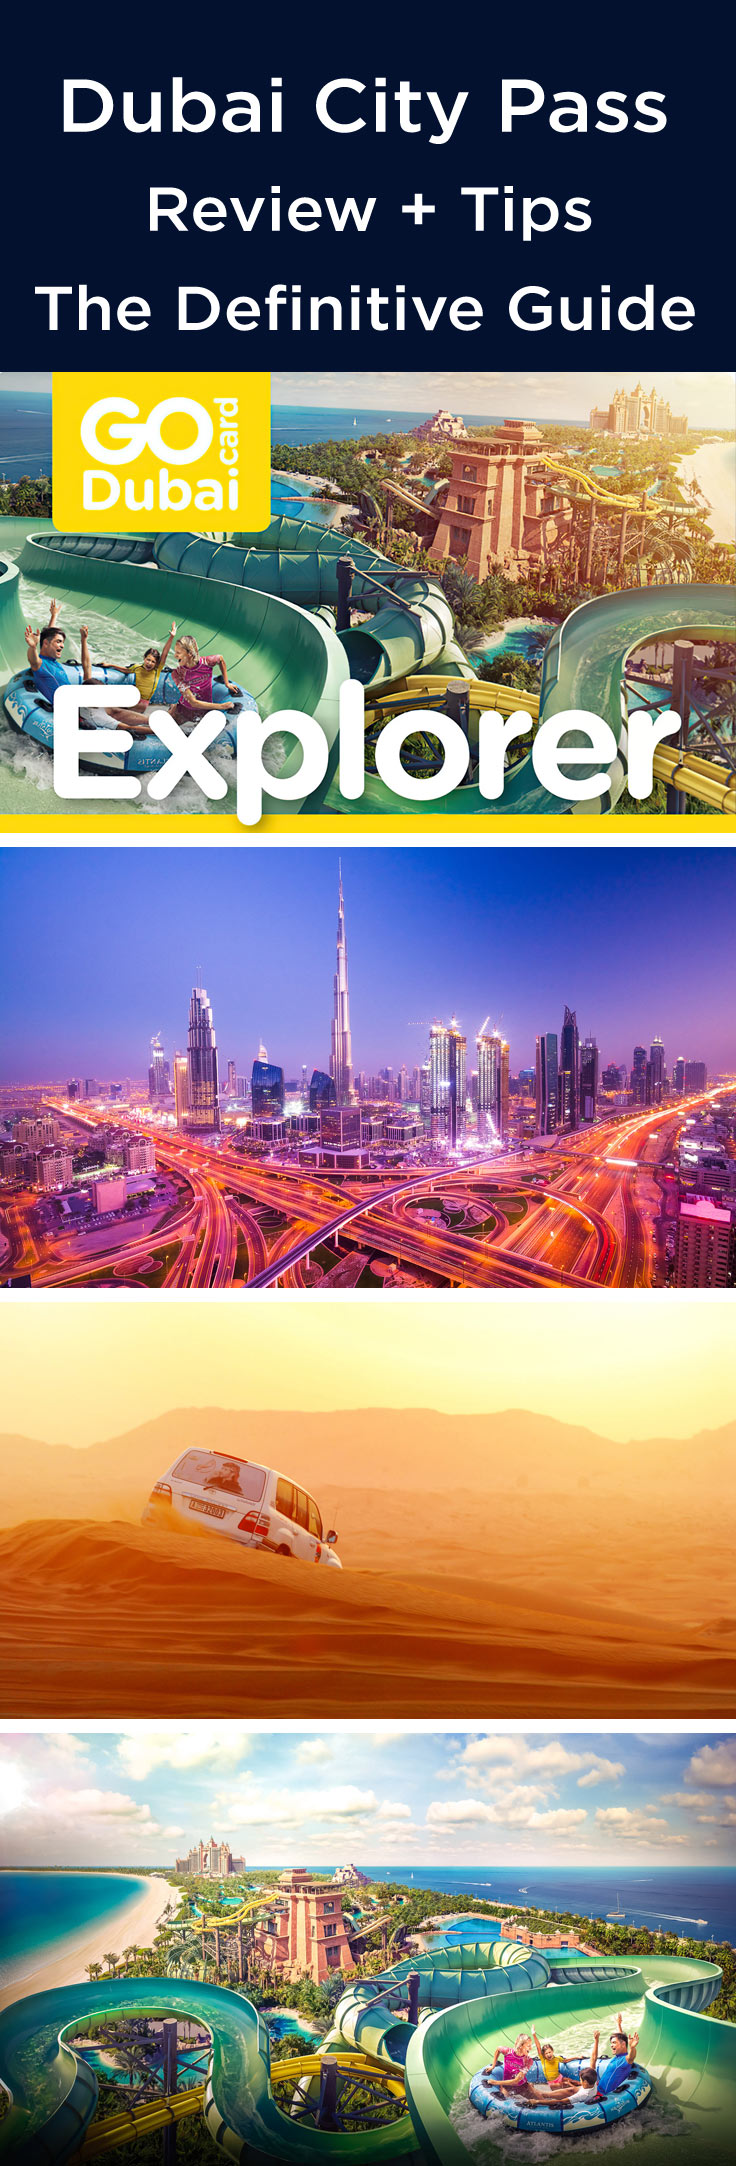 Dubai Explorer Pass